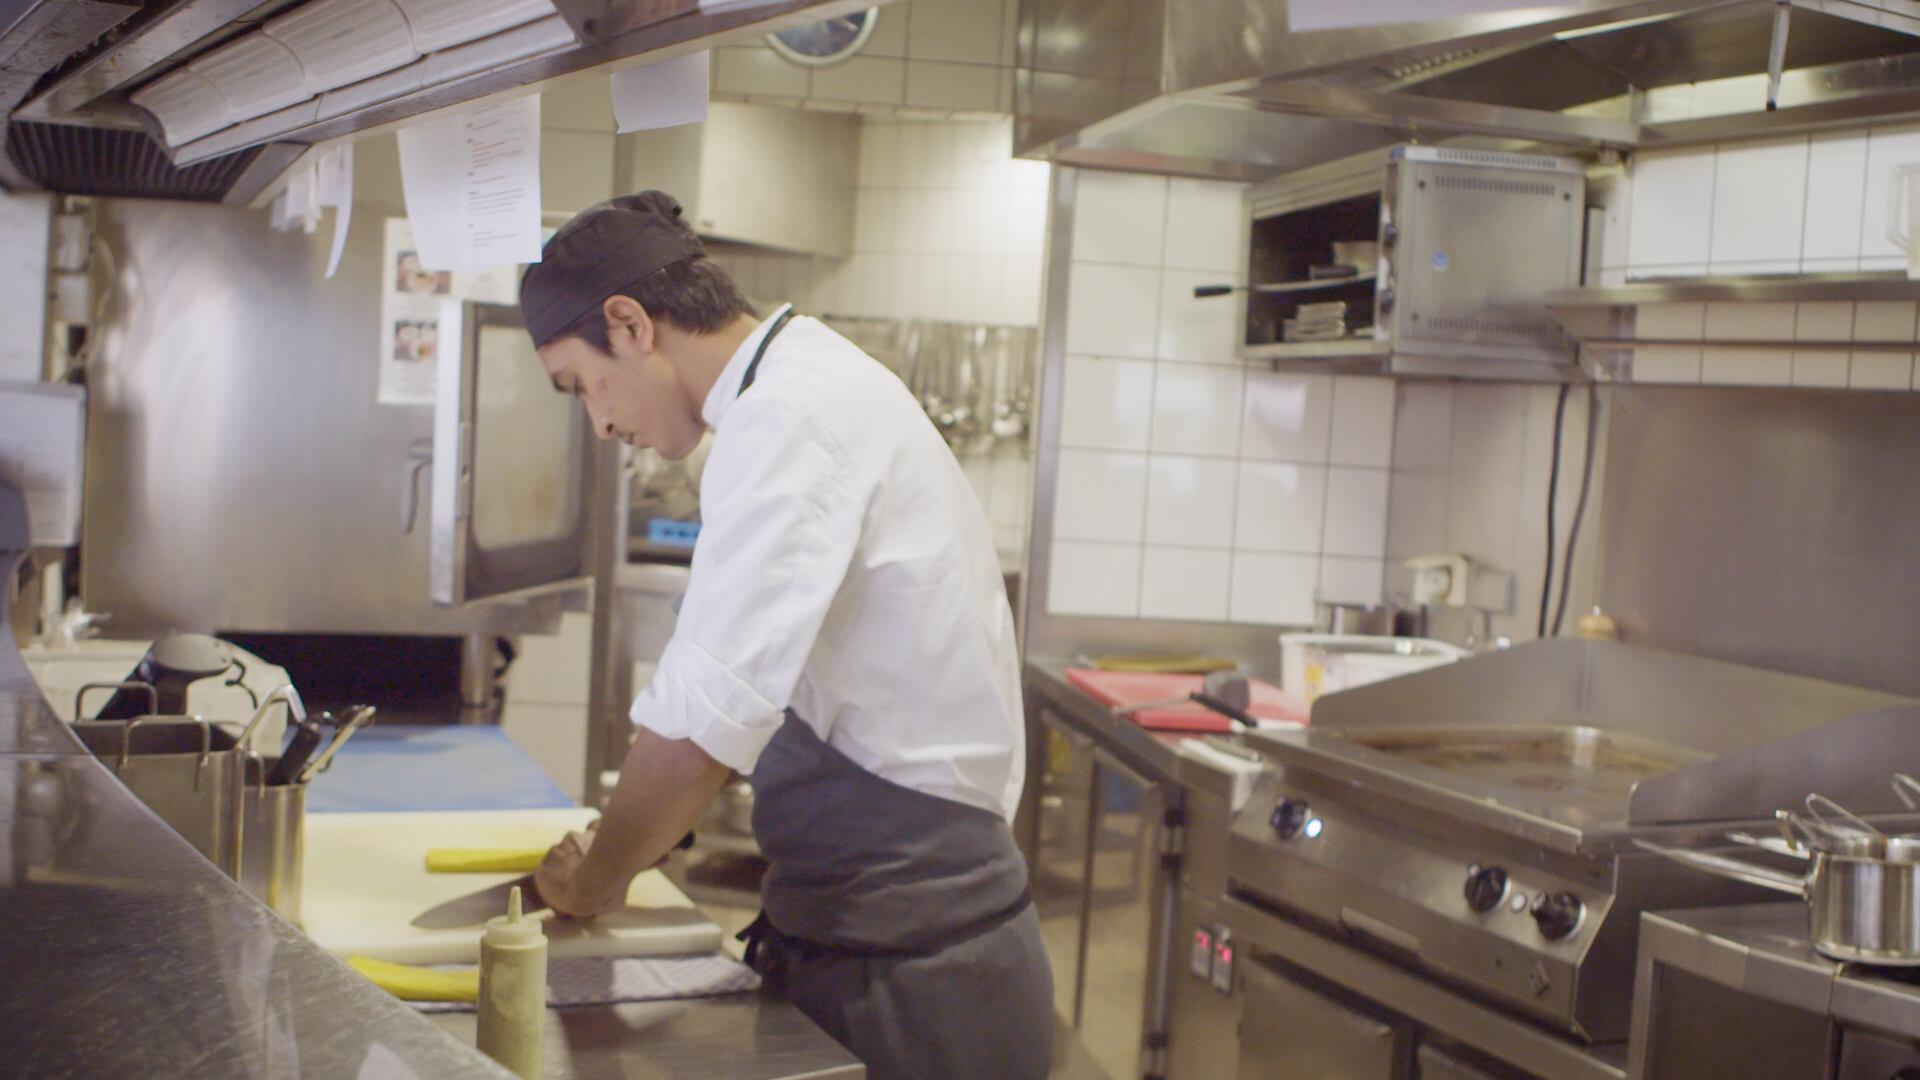 Ein junger Mann steht in einer professionellen Küche und bereitet Essen vor.